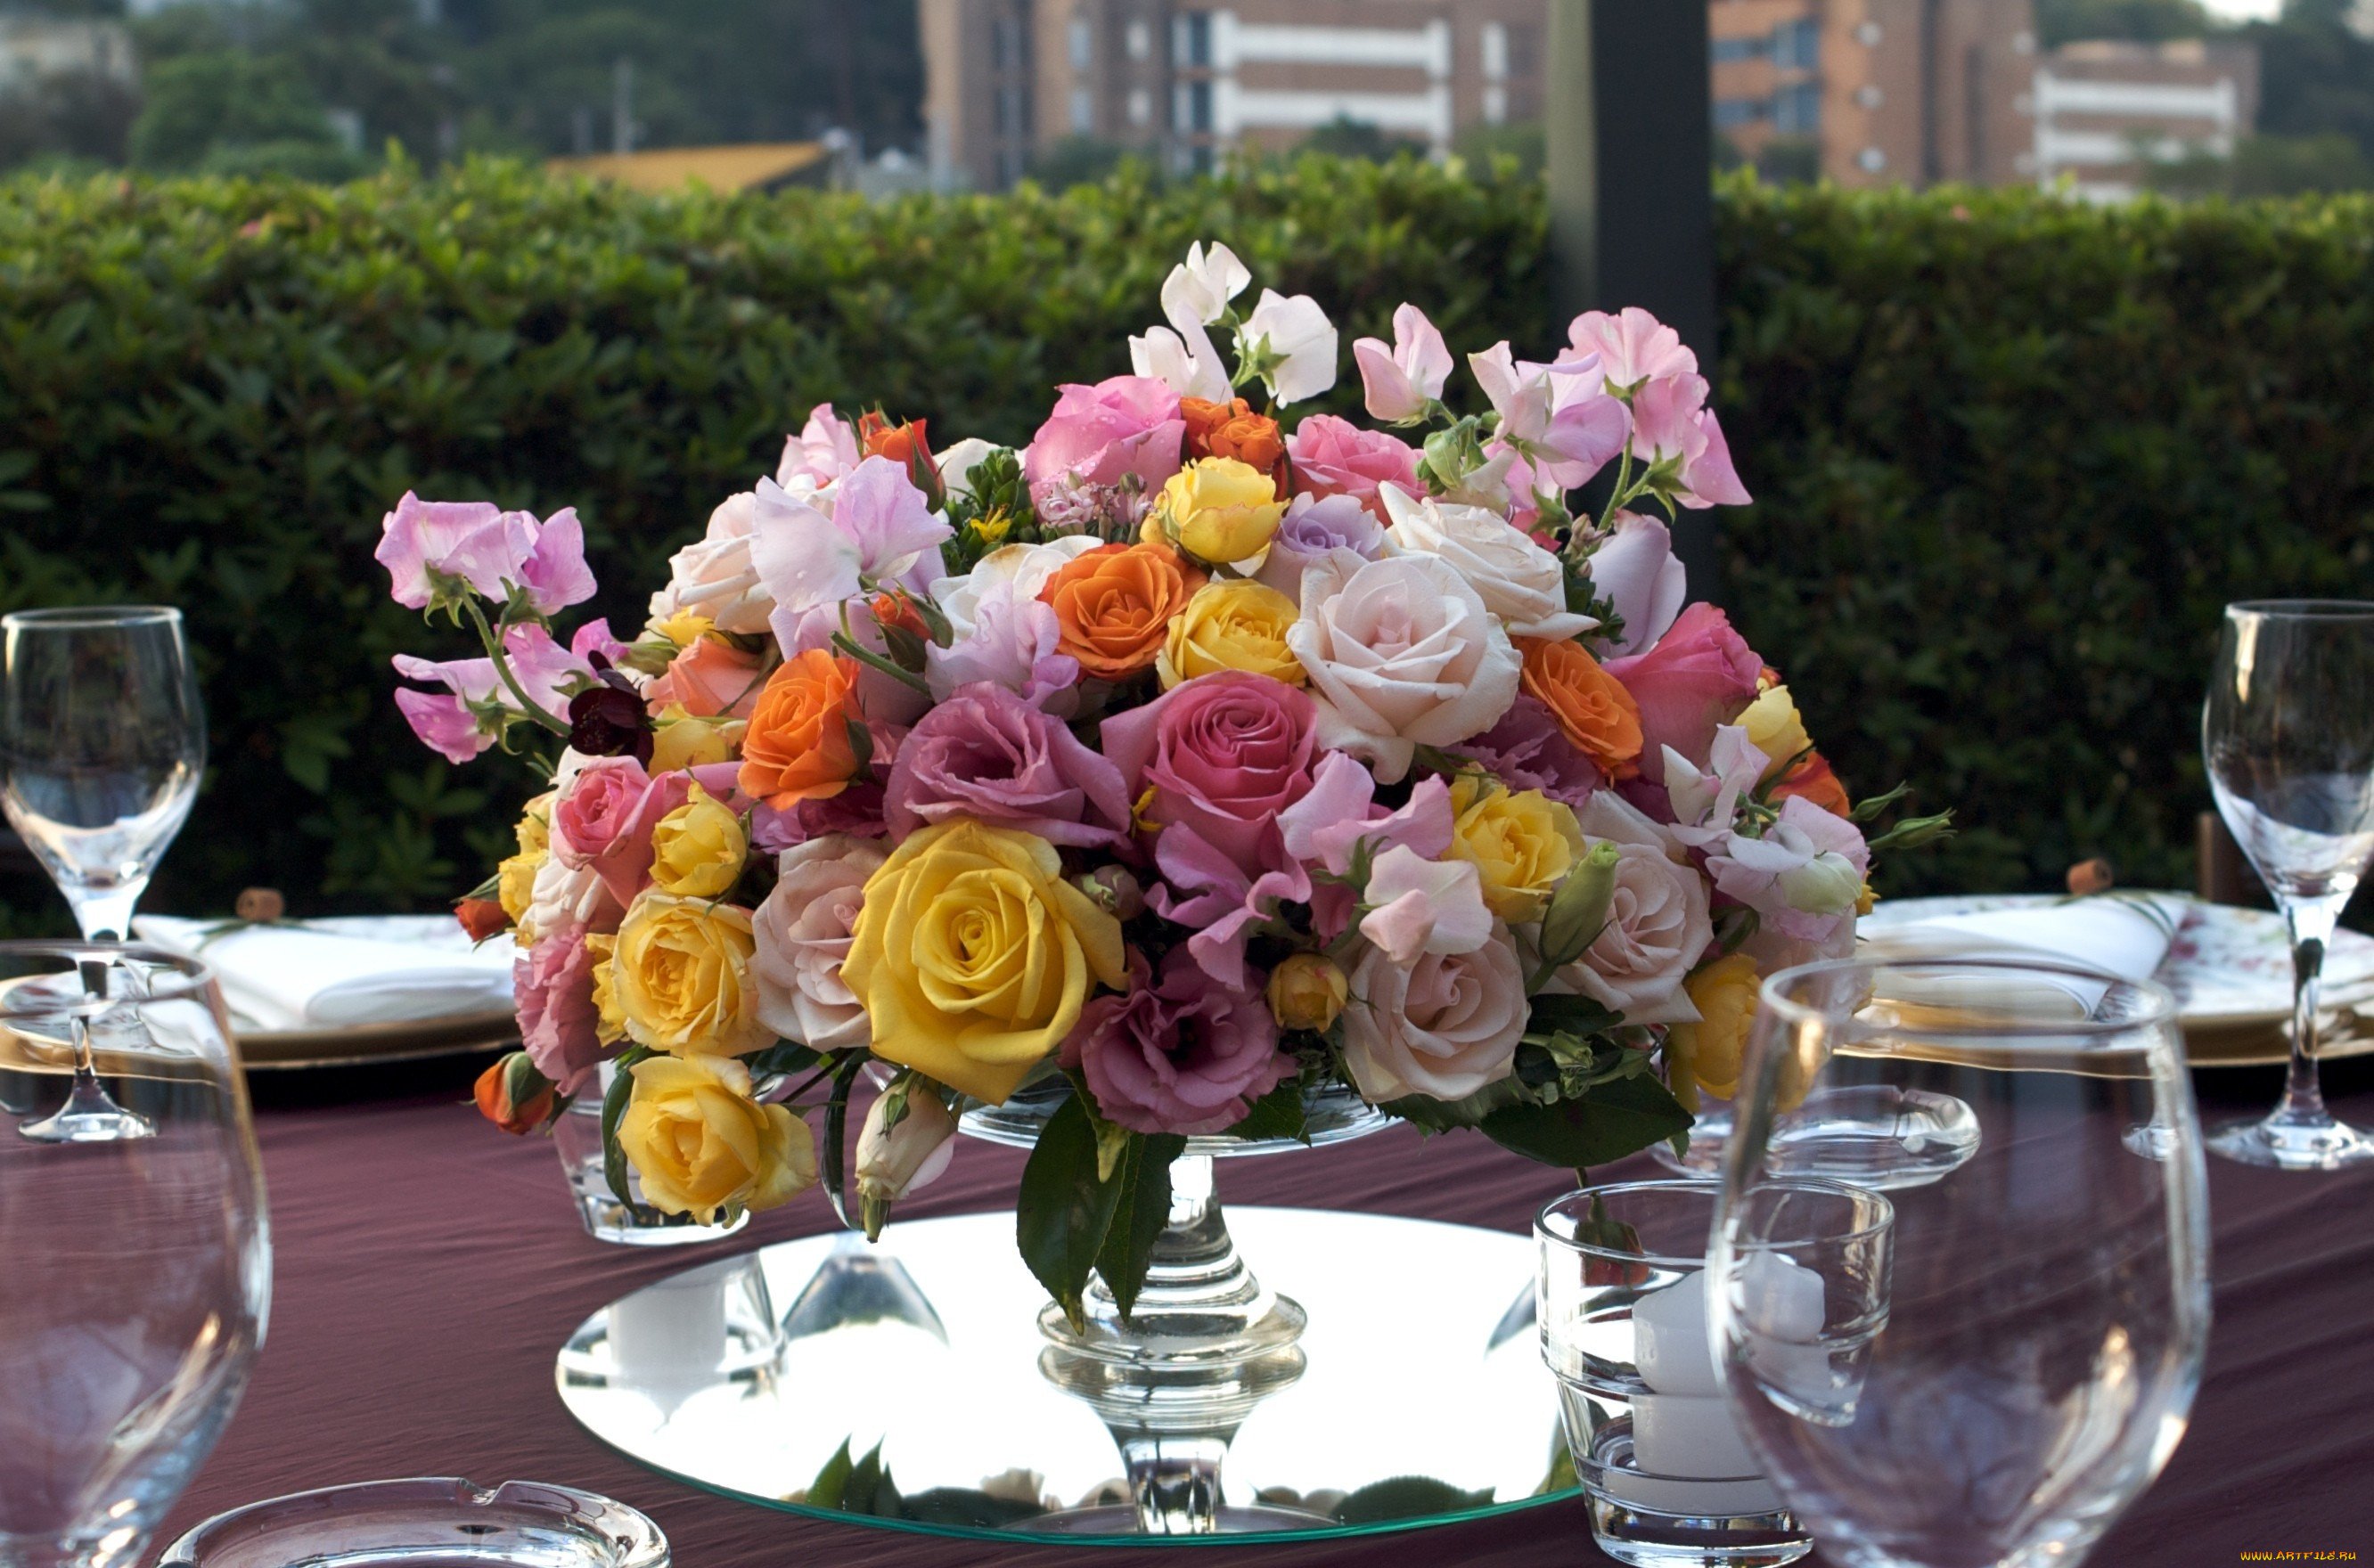 Много цветов на столе. Цветочная композиция. Композиция из цветов на стол. Свадебные композиции из цветов на стол. Цветы на праздничном столе.